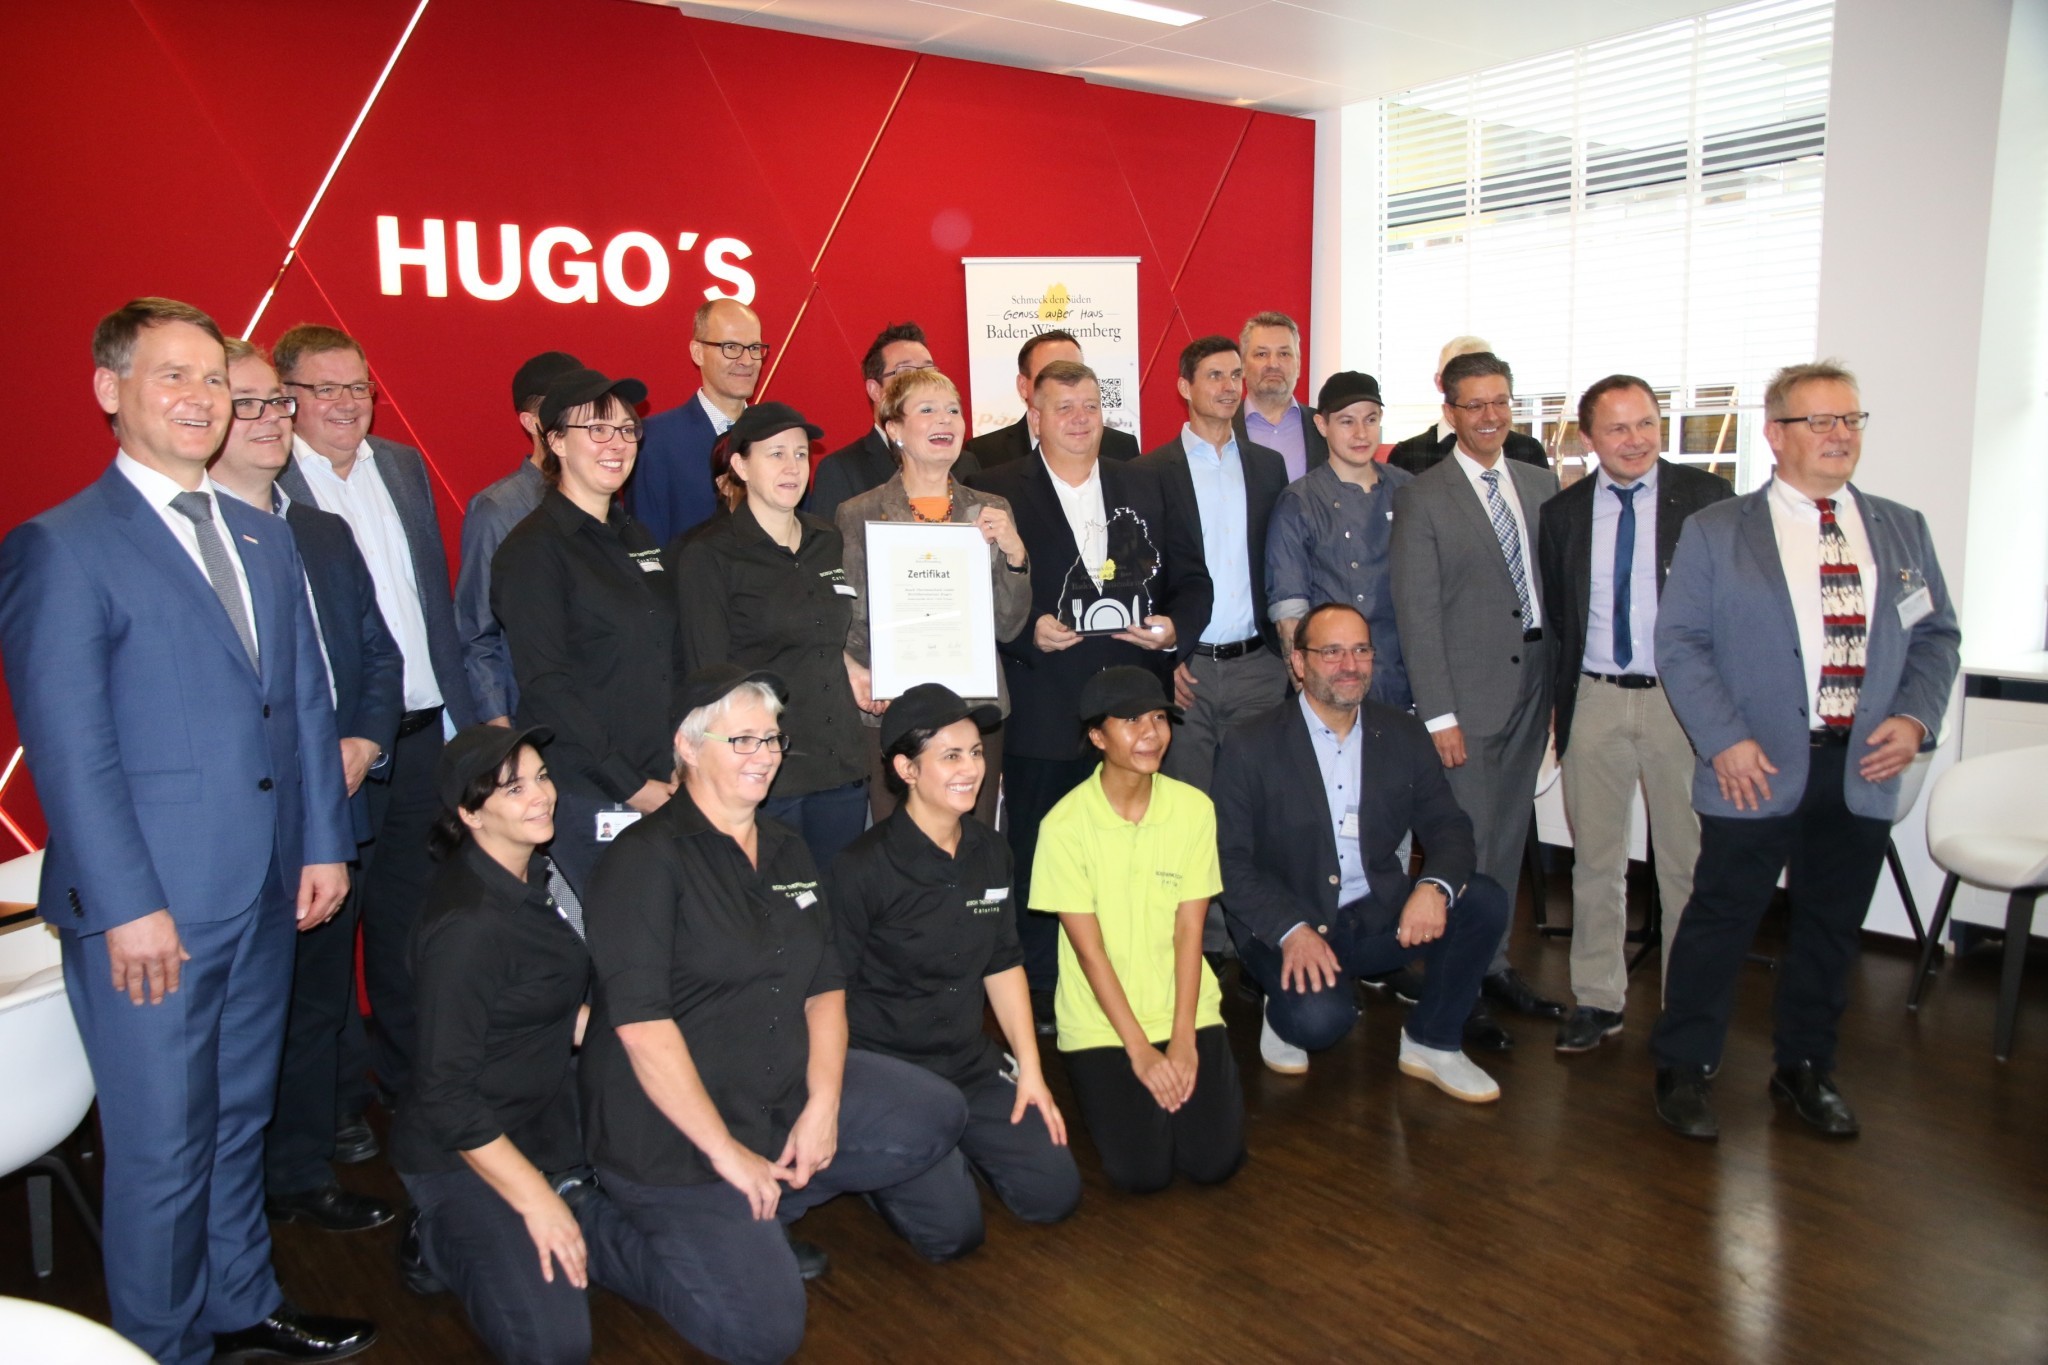 Bild Auszeichnung der Betriebsgastronomie Hugo’s bei Bosch Thermotechnik in Wernau